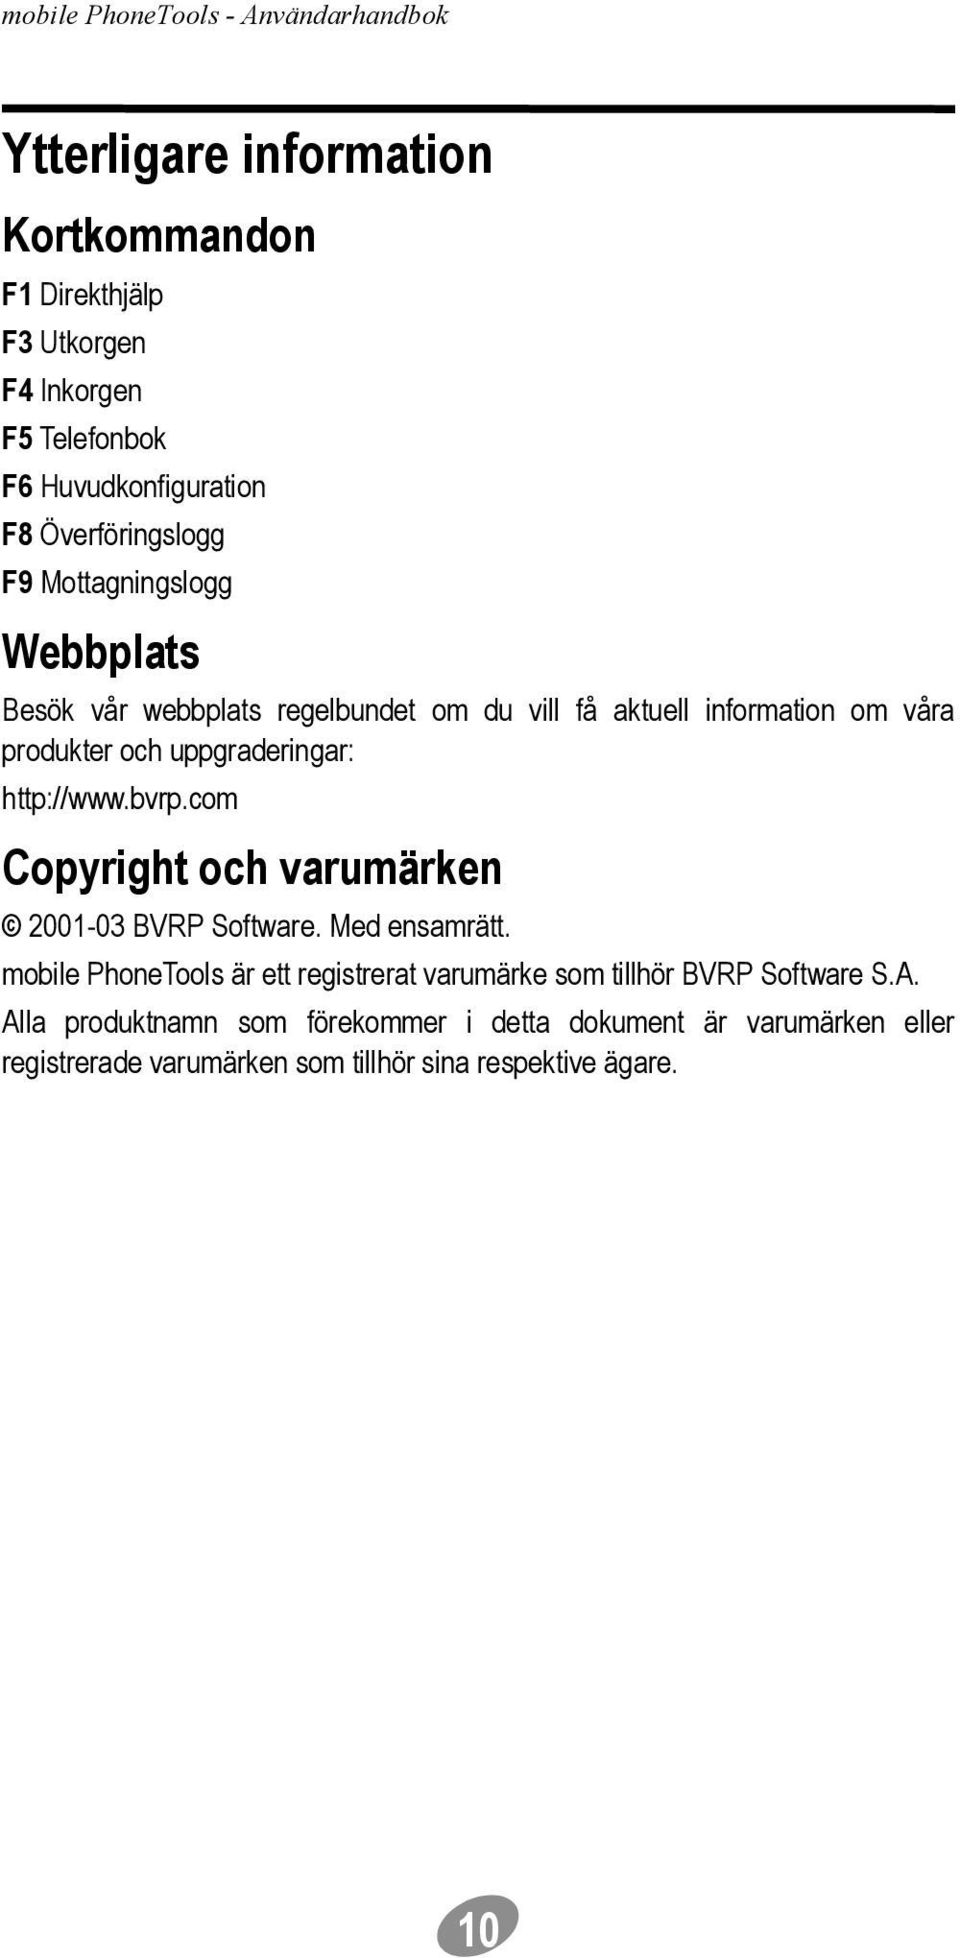 http://www.bvrp.com Copyright och varumärken 2001-03 BVRP Software. Med ensamrätt.